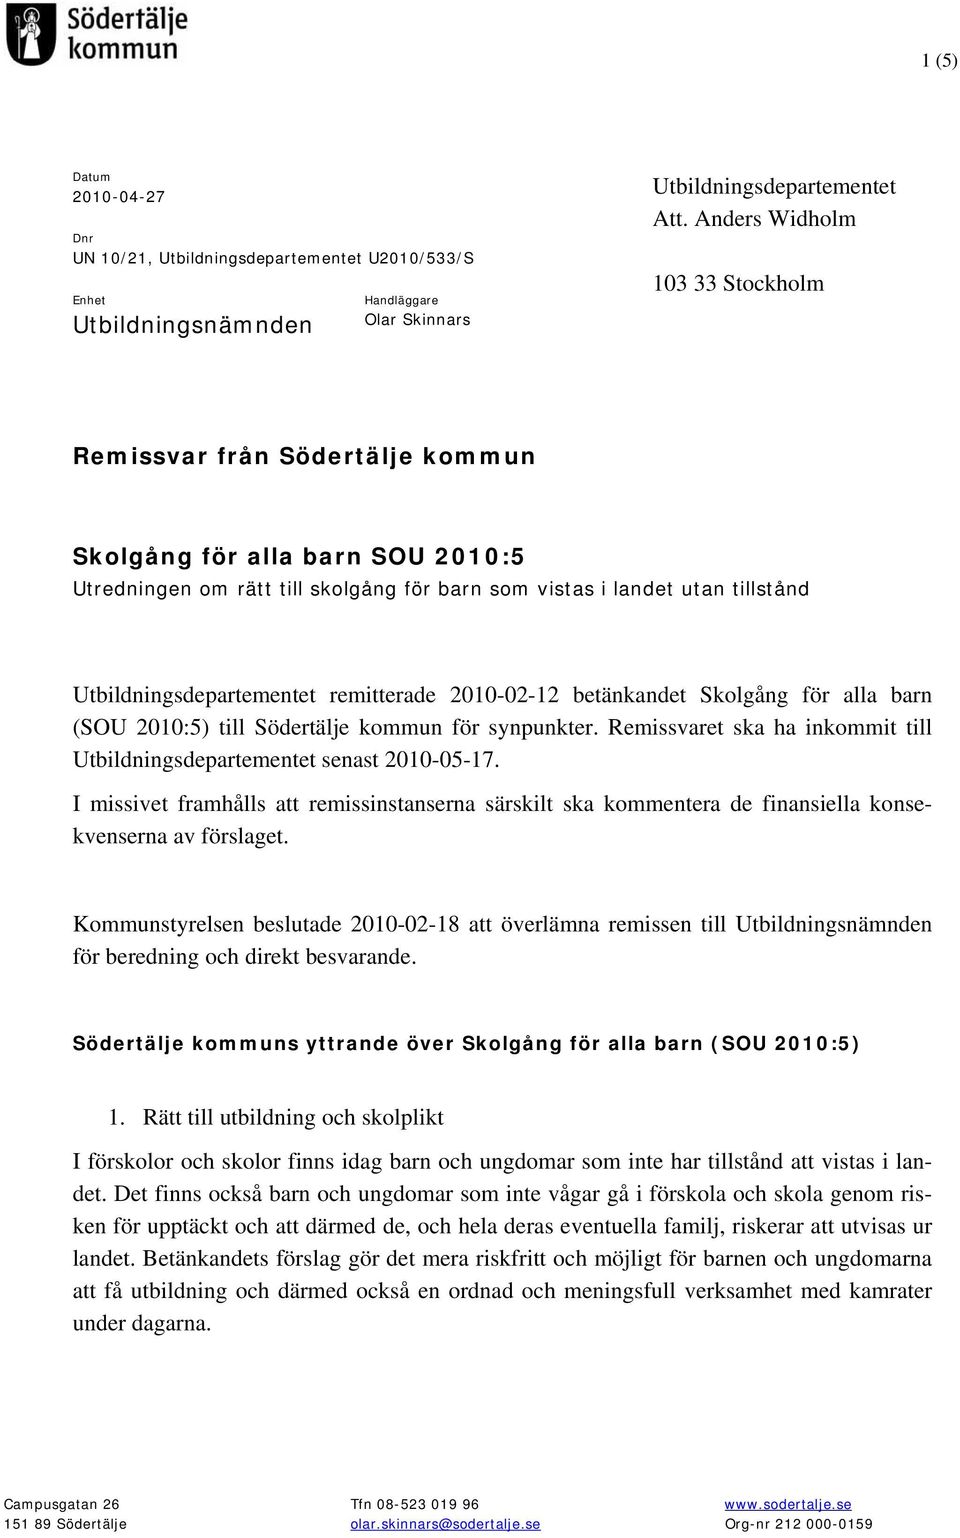 Utbildningsdepartementet remitterade 2010-02-12 betänkandet Skolgång för alla barn (SOU 2010:5) till Södertälje kommun för synpunkter.